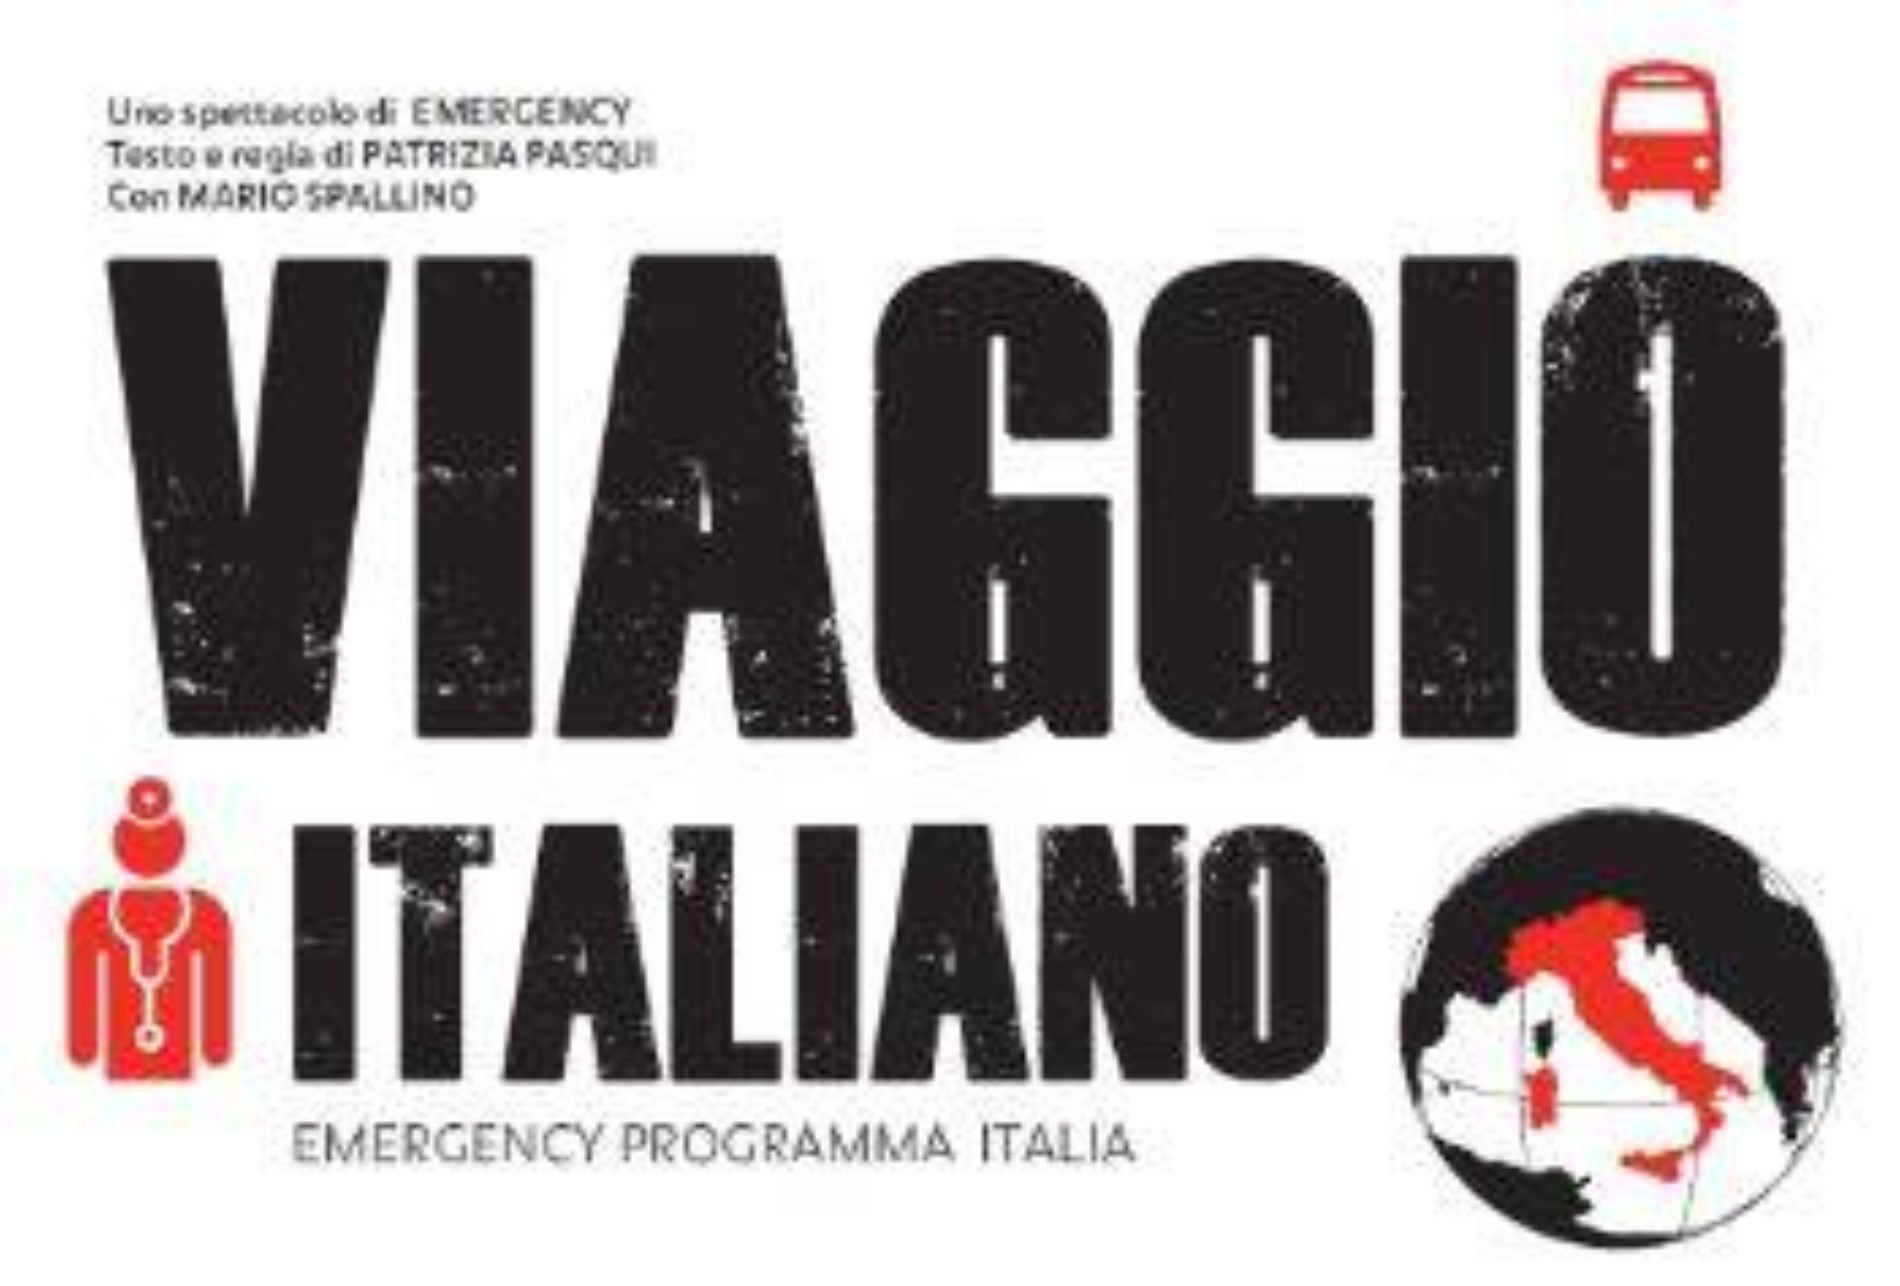 Per la prima volta a Caltanissetta “VIAGGIO ITALIANO”- il Teatro di Emergency